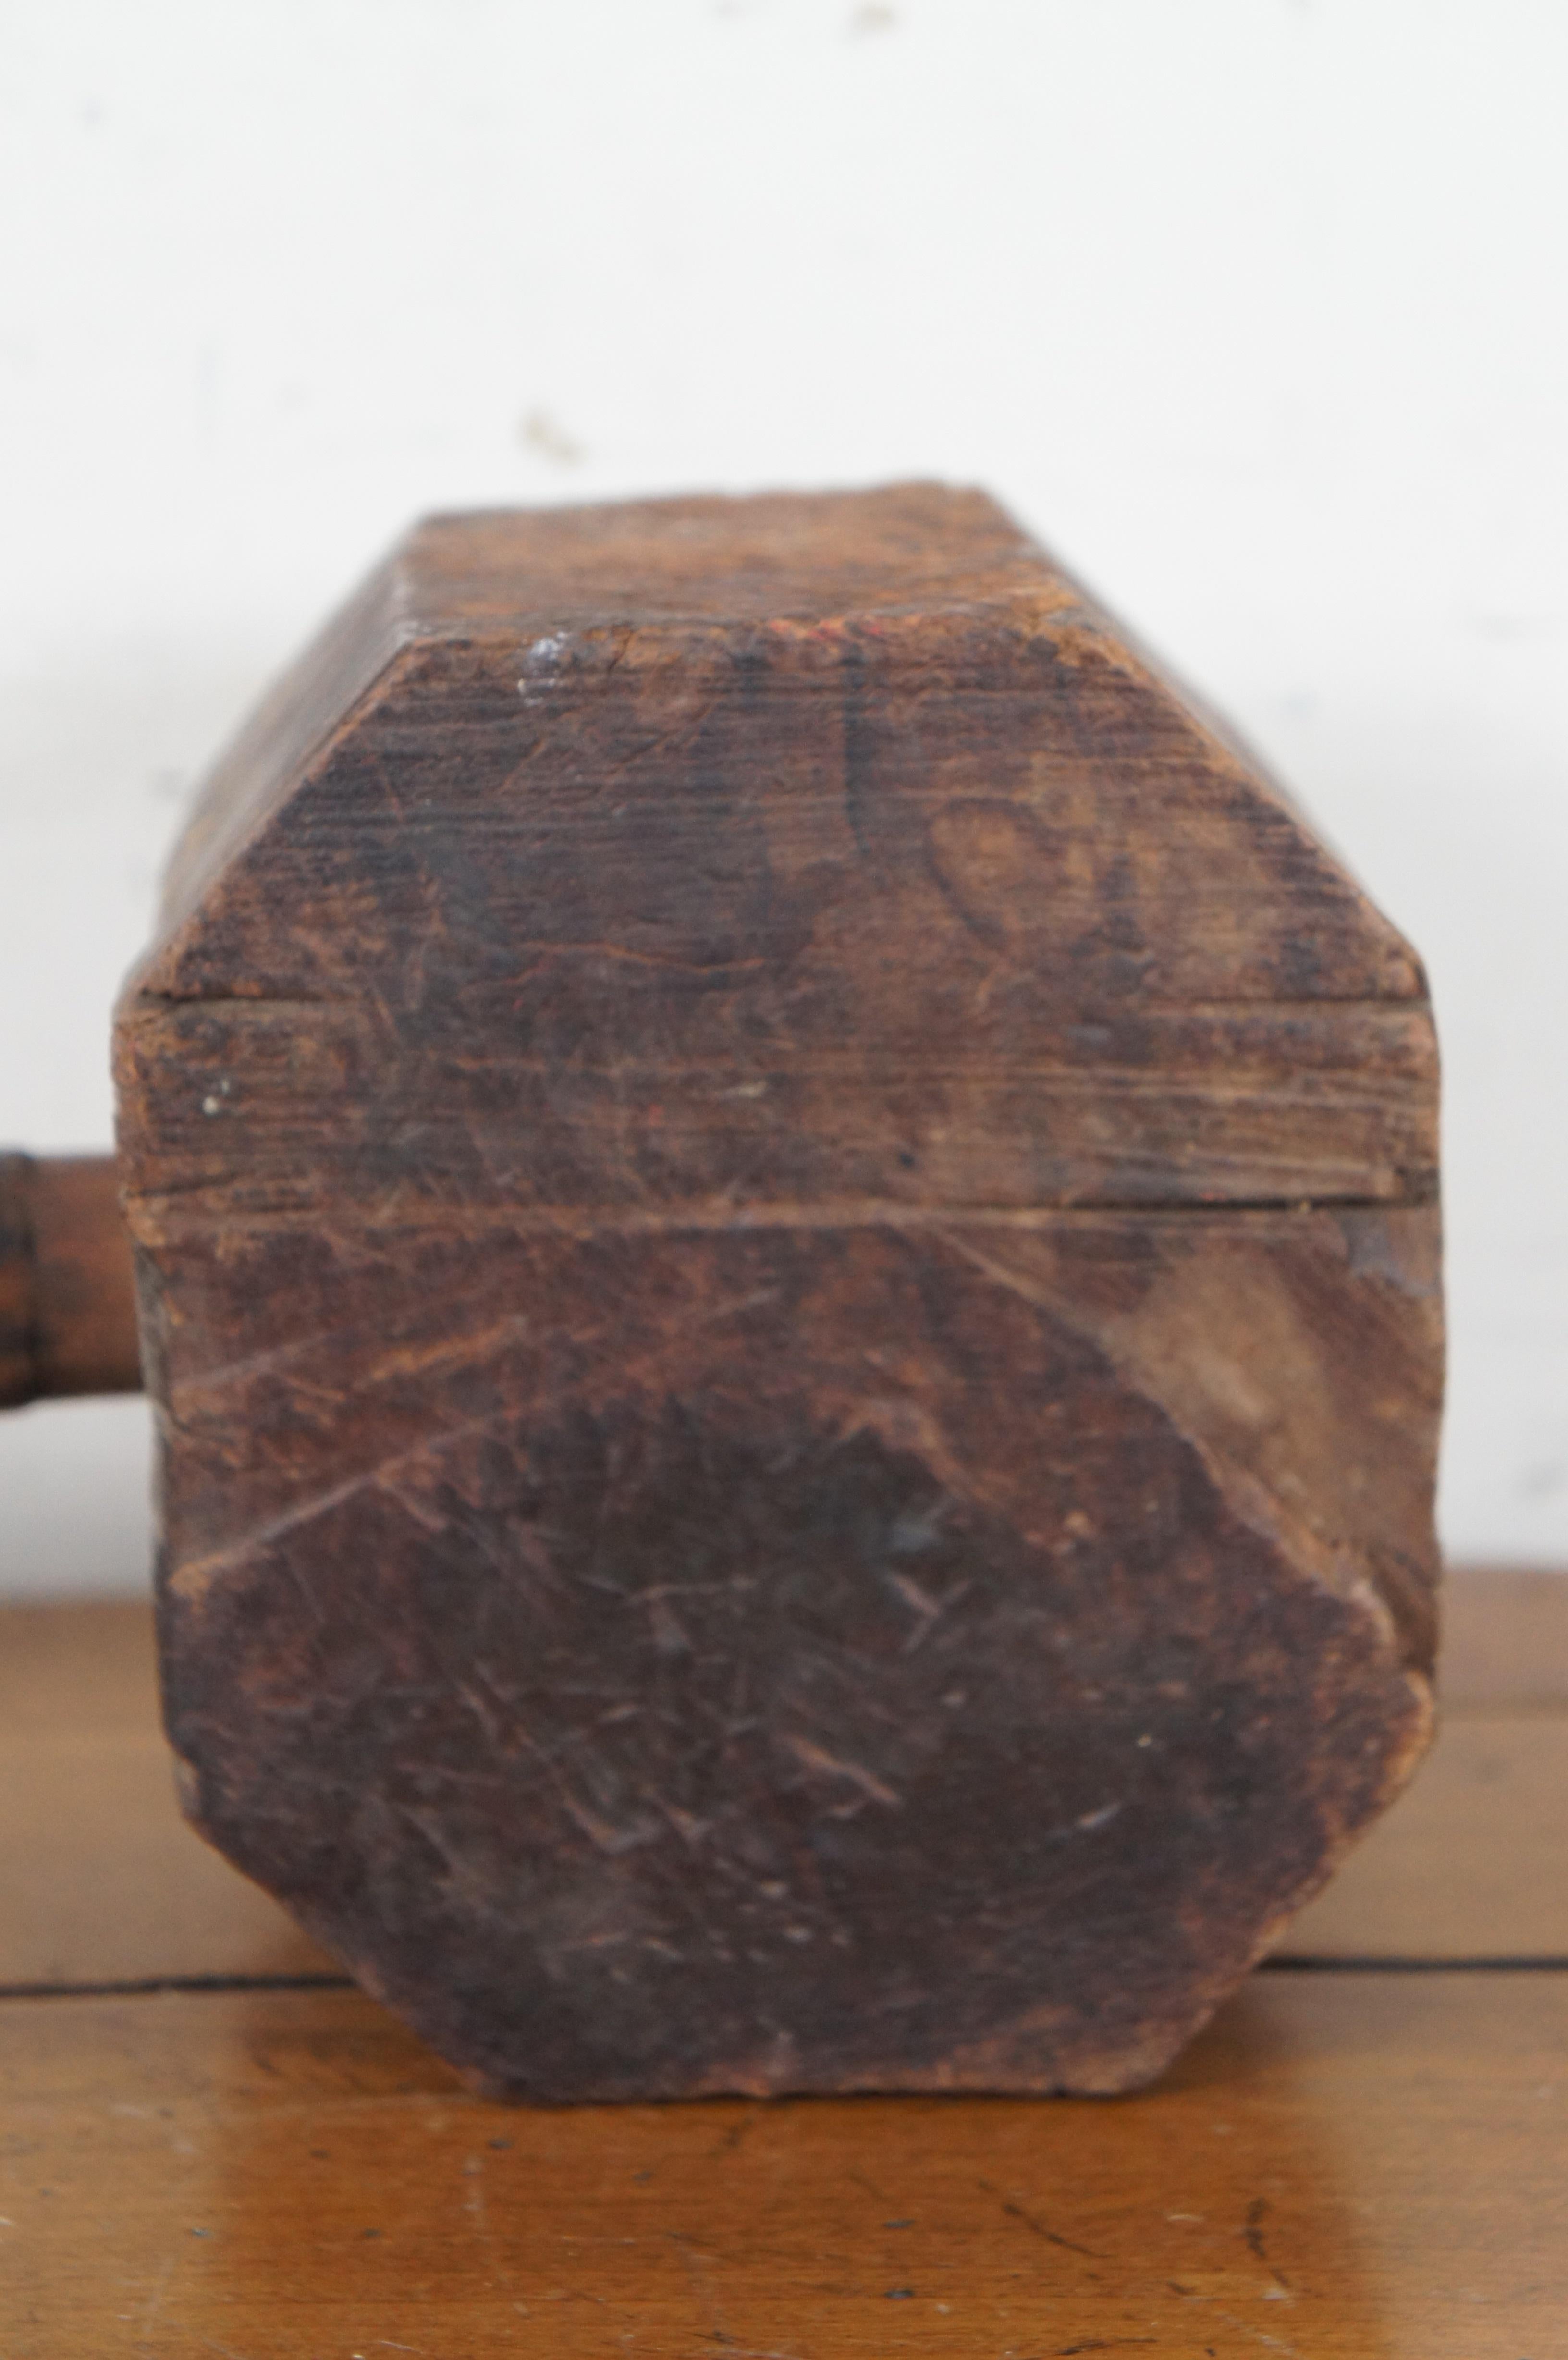 Folk Art Antique Primitive Rustic Wooden Octagonal Sledge Hammer Carpenter Mallet For Sale